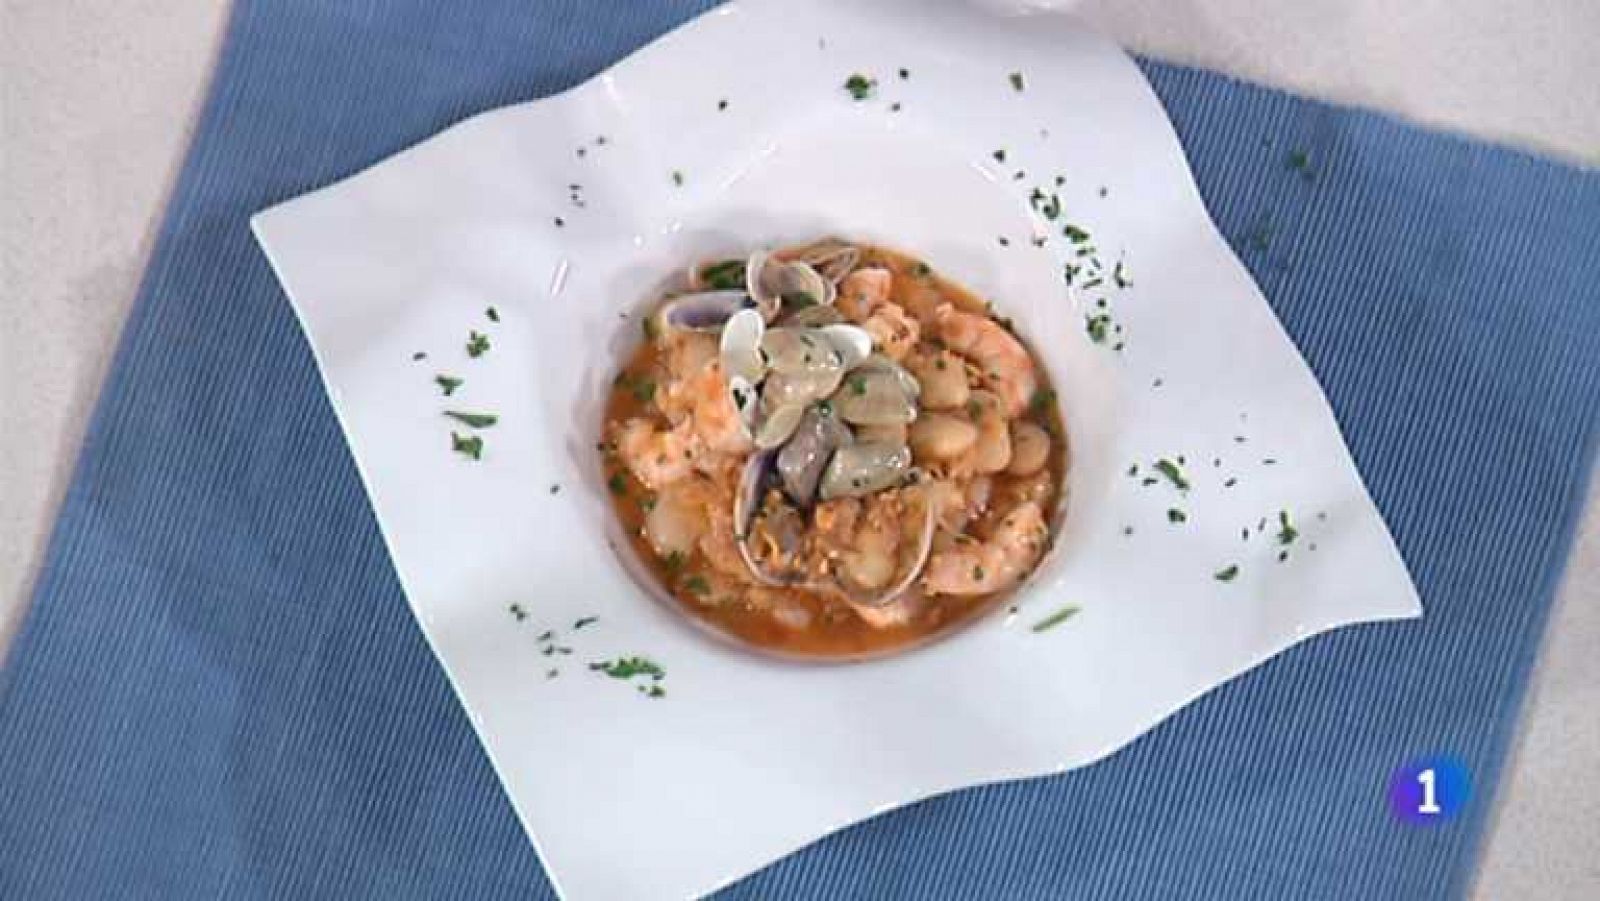 Cocina con Sergio - Judiones de la abuela con frutos de mar